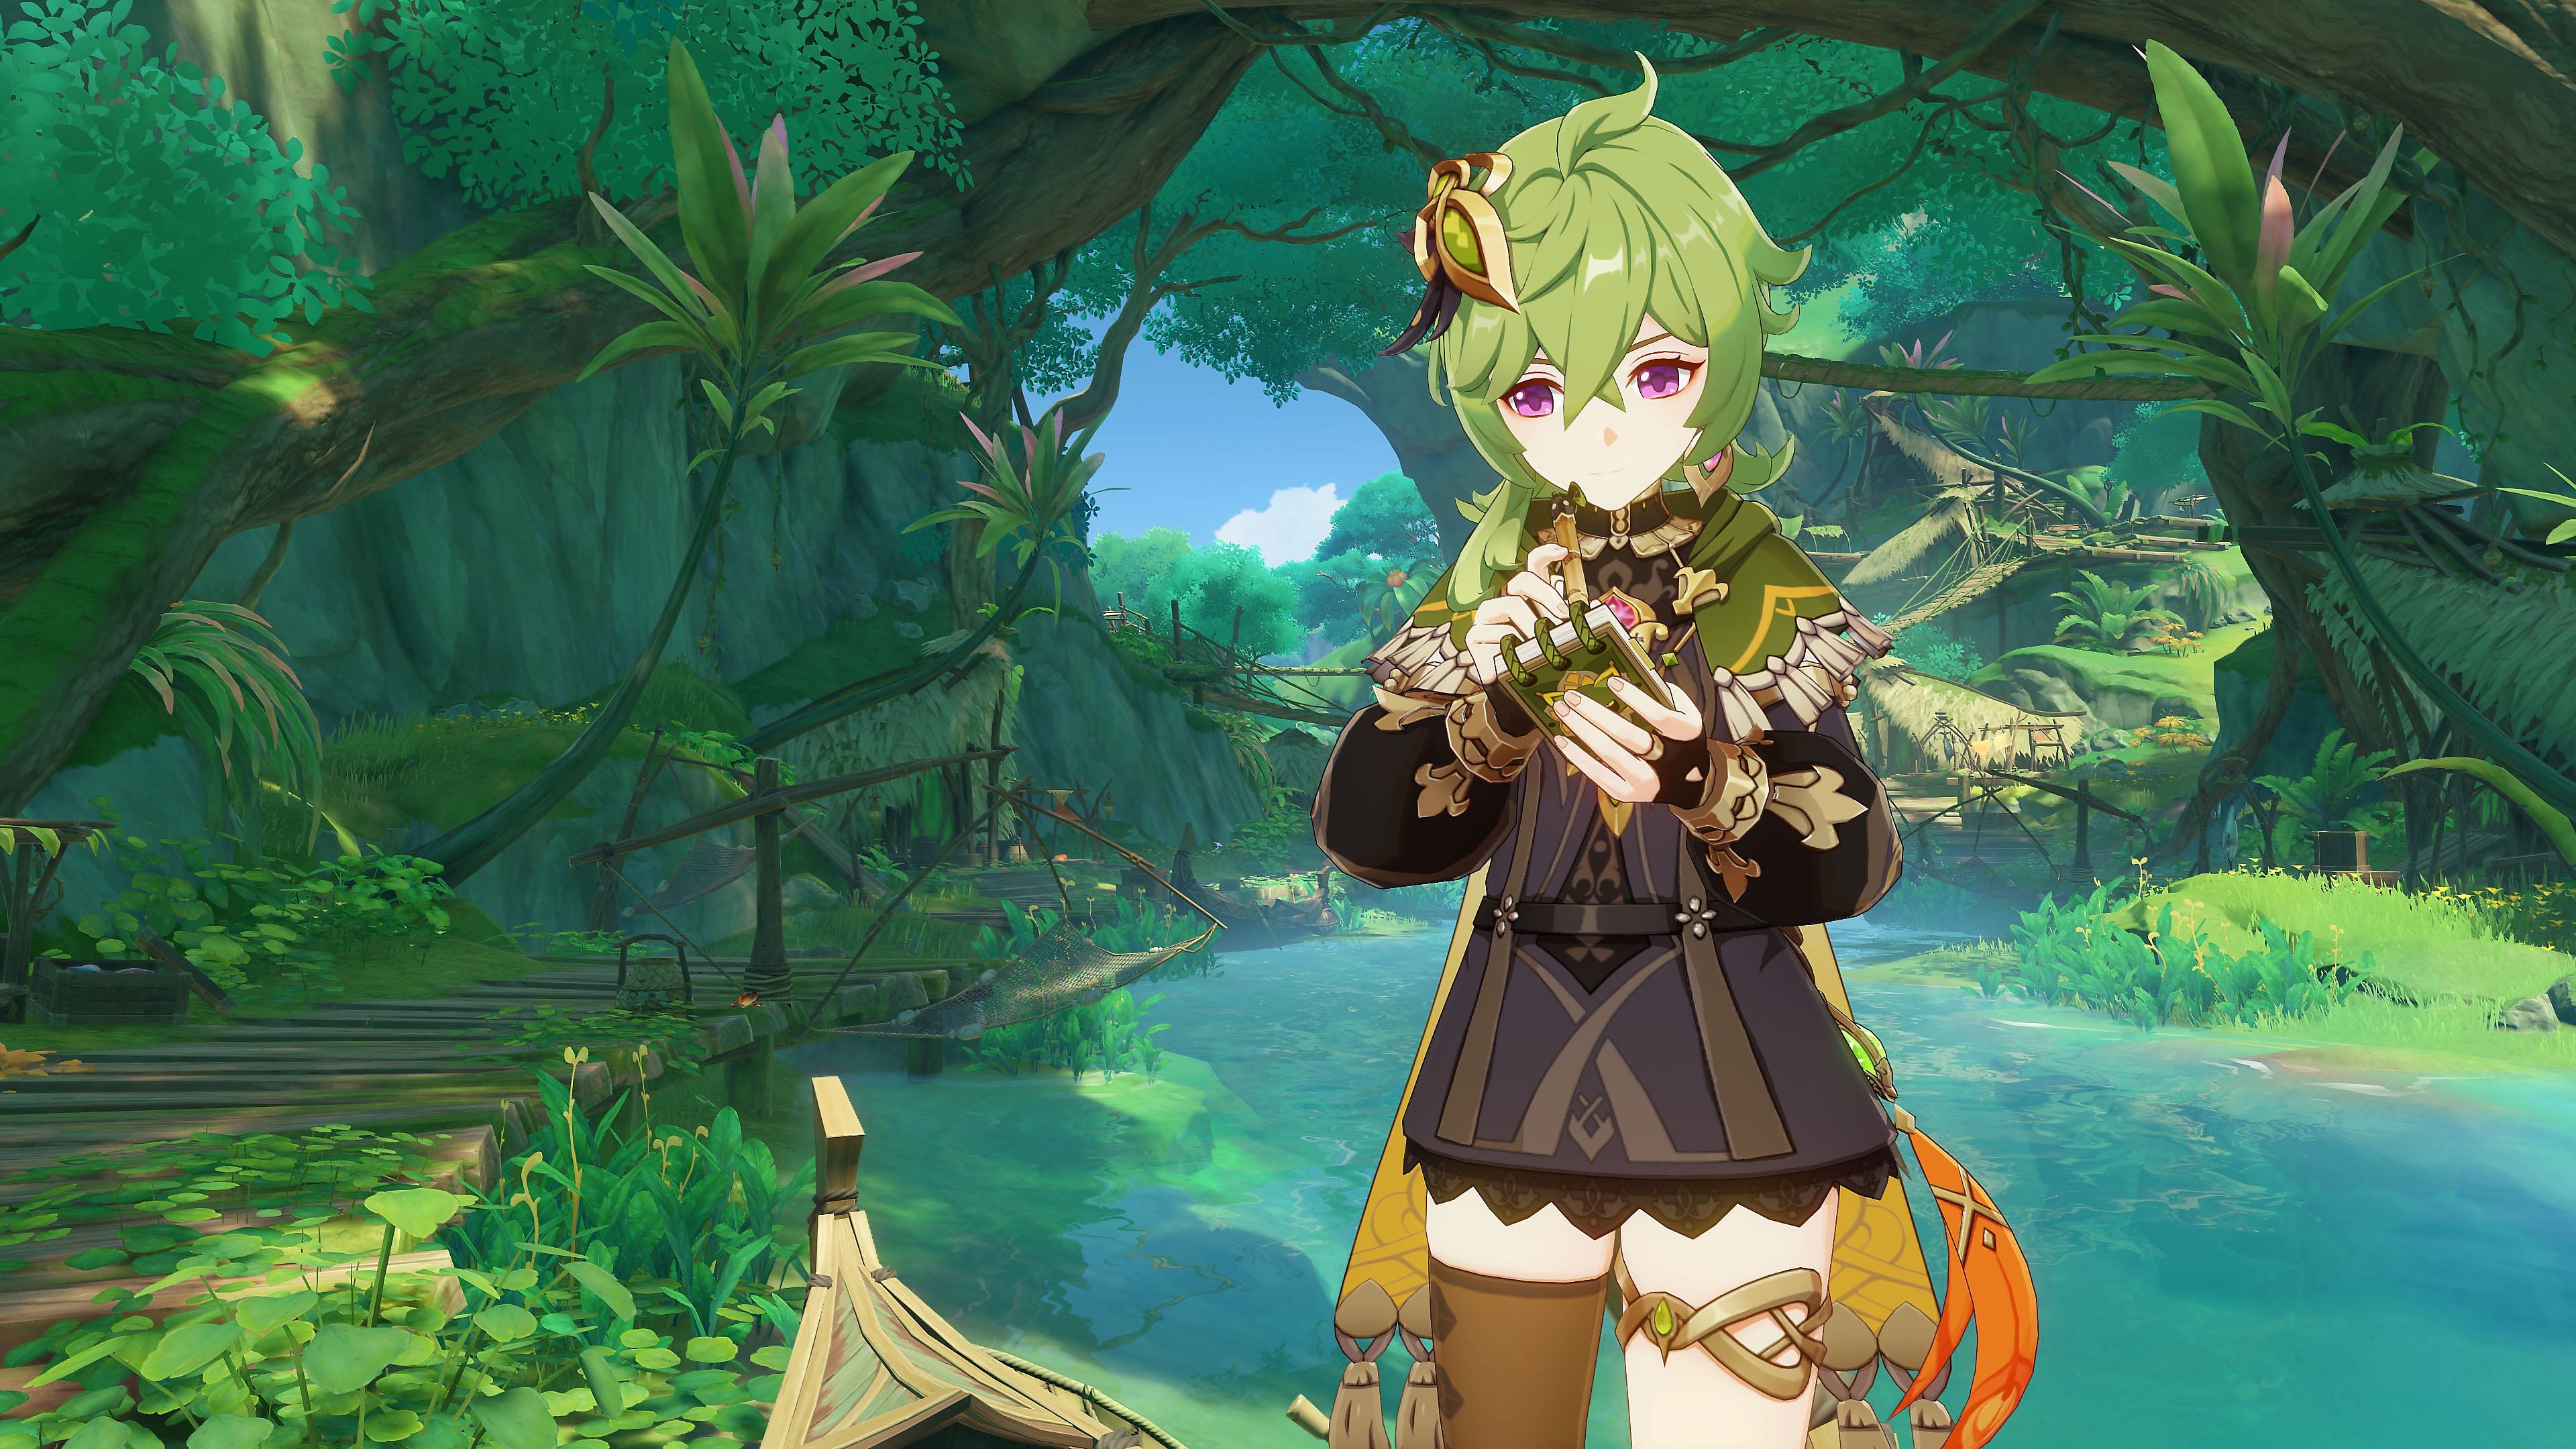 Genshin Impact : Mise à jour 3.0 - Capture d'écran montrant un personnage aux cheveux verts dans une forêt